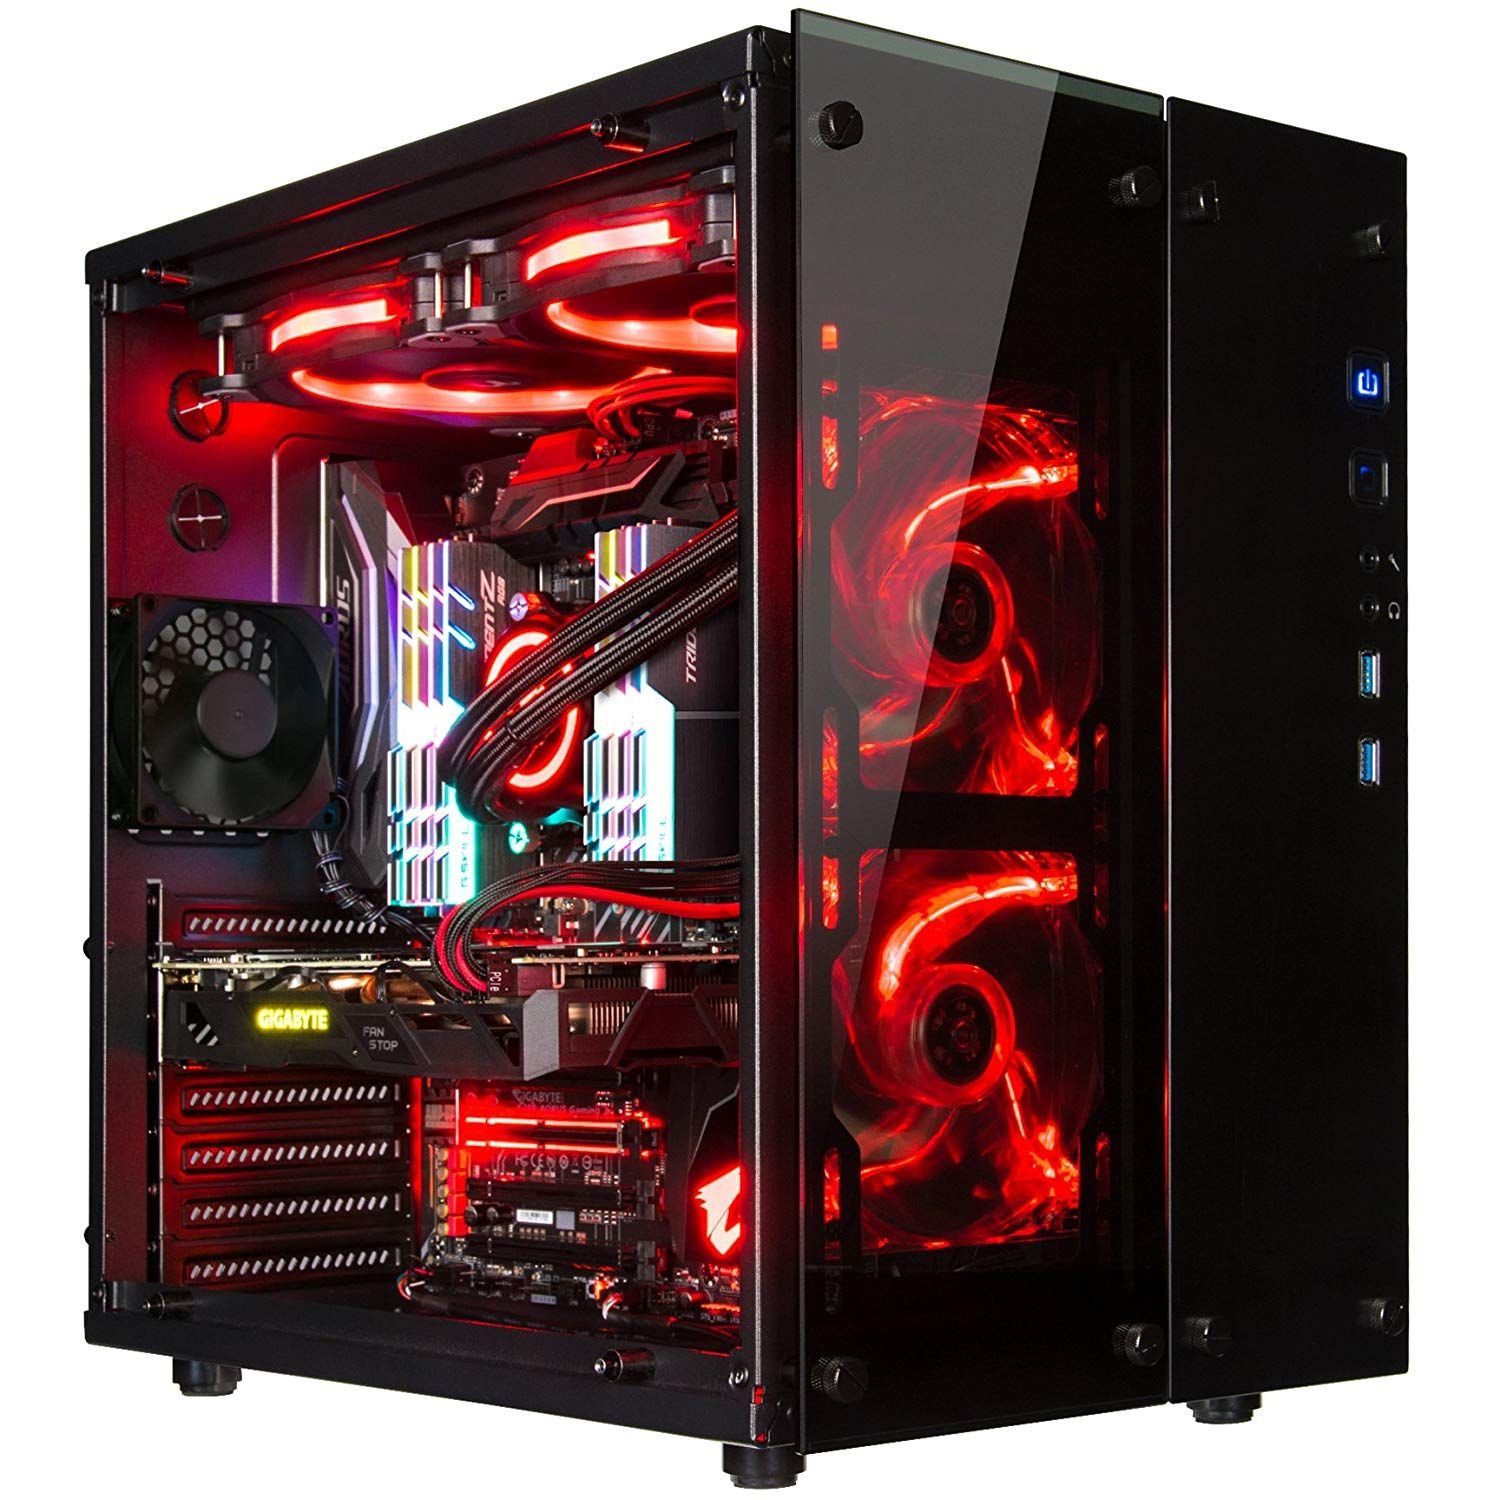 Ardor gaming 3000m. Компьютер (игровой системный блок) qx200 (i3). Компьютерный корпус Computer Case c806. Компьютерный корпус Chenbro pc61165 Black/Red. Rosewill Spectra d100.